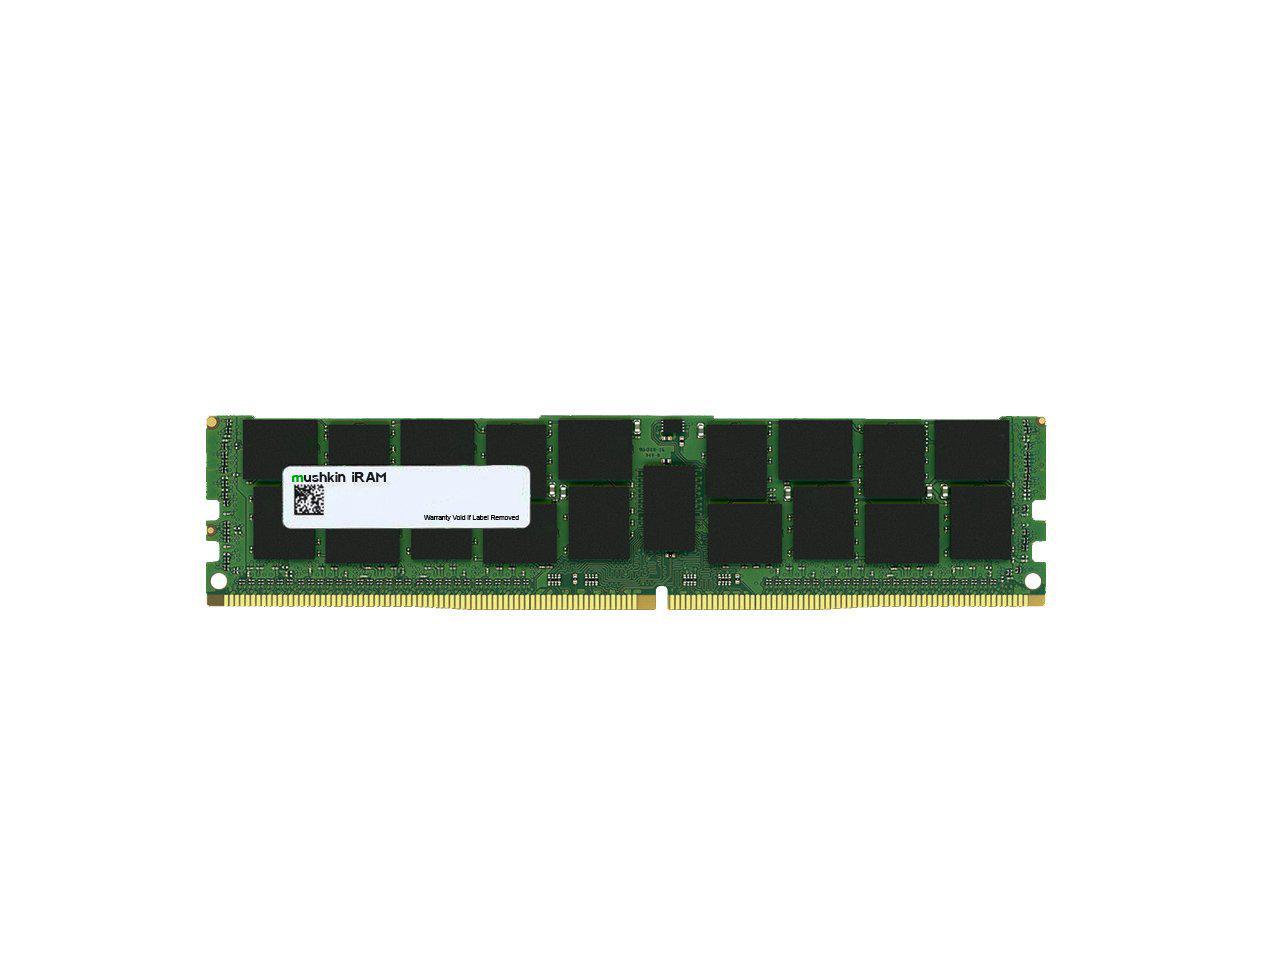 Mushkin 16GB DDR4 RDIMM PC4-2666 Model MAR4R266KF16G14